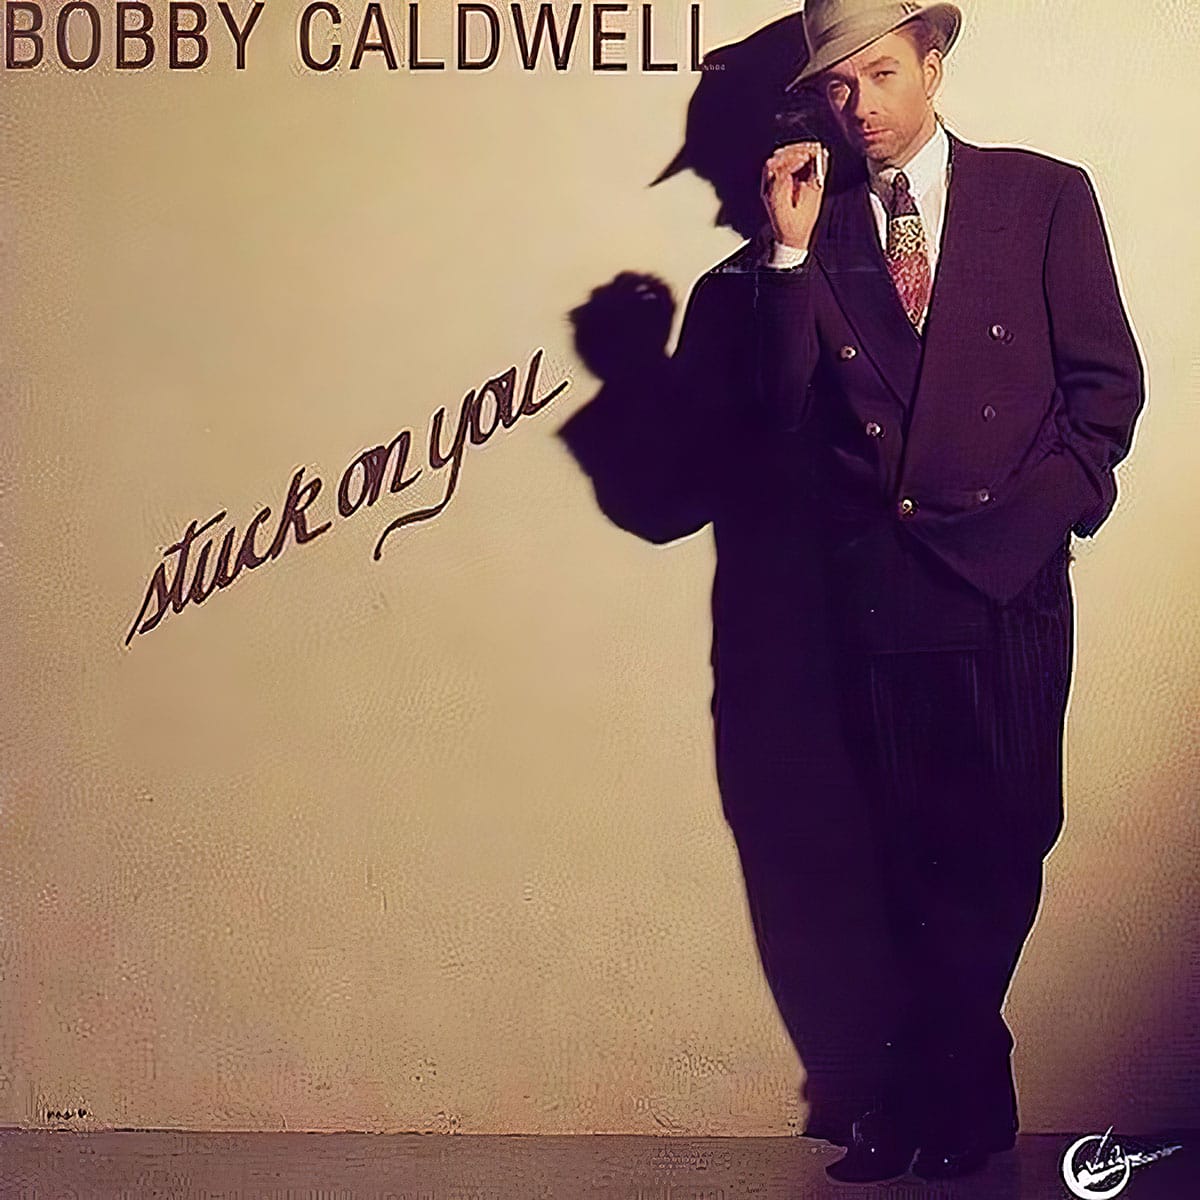 Stuck on You - Bobby Caldwell